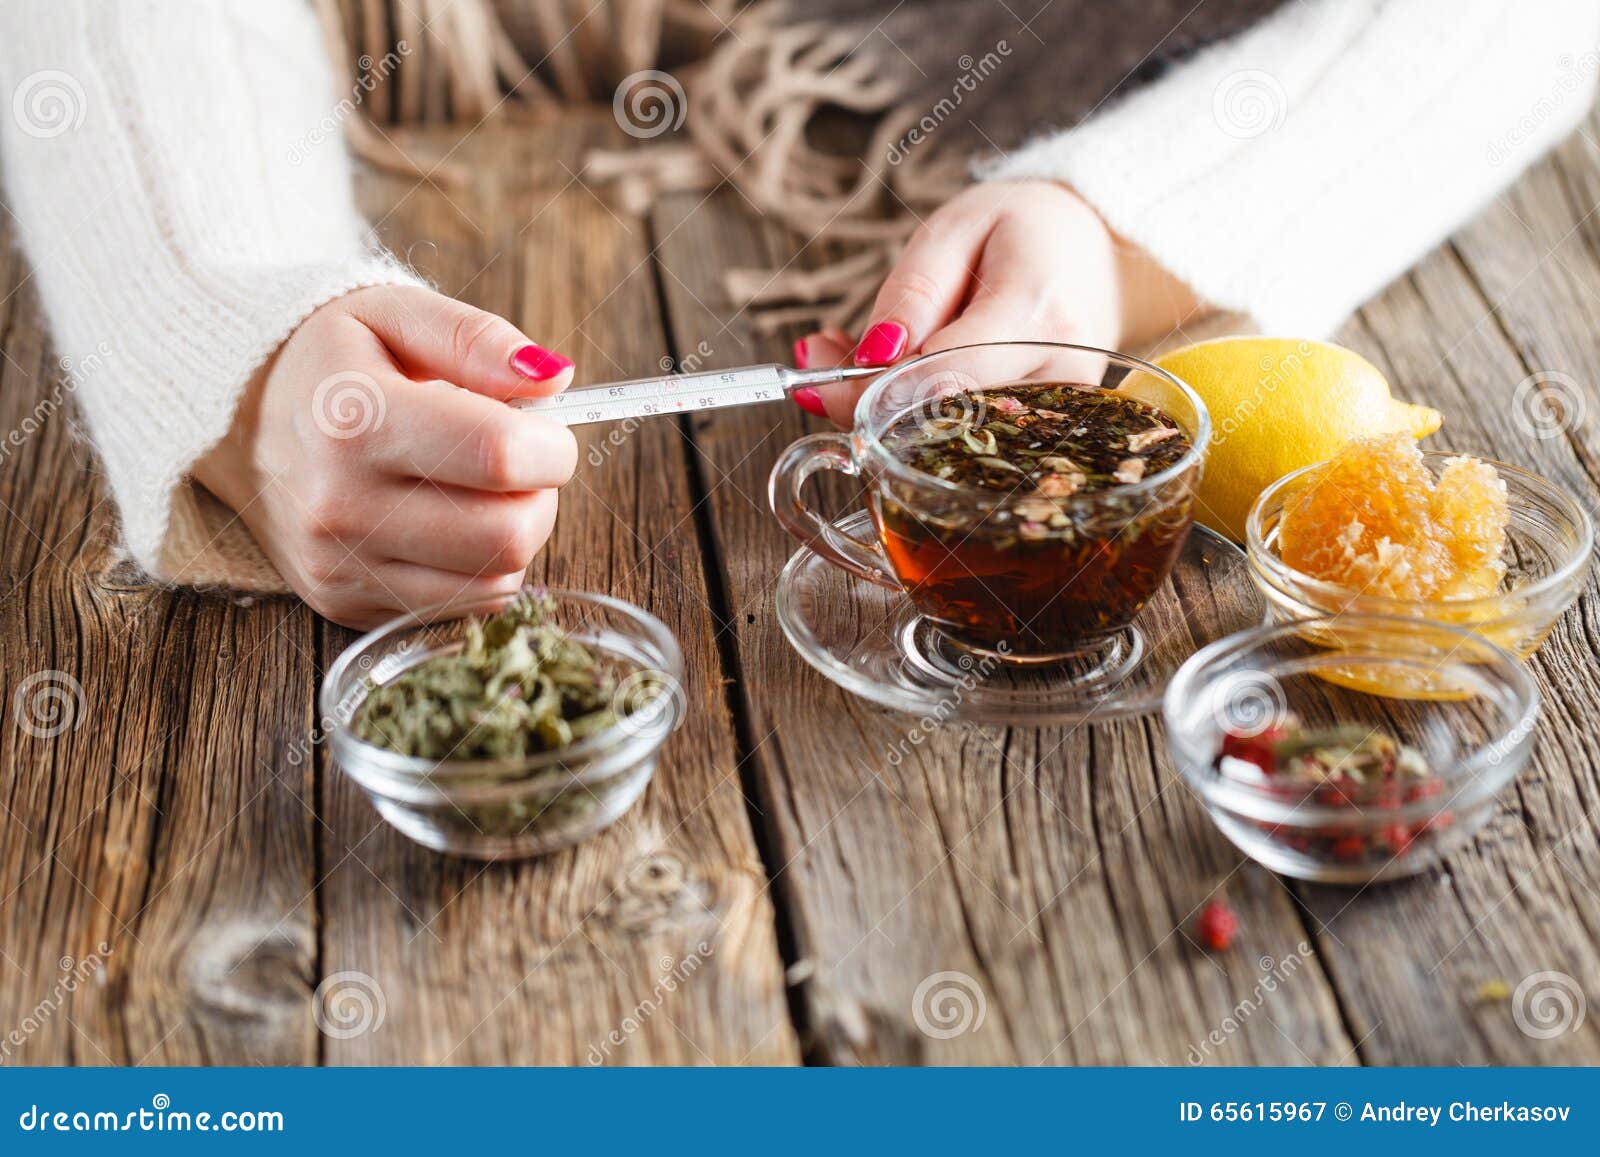 При температуре пьют горячий чай. Пьет травяной чай. Травяной чай для простуды. Горячее питьё от простуды. Девушка пьет травяной чай.